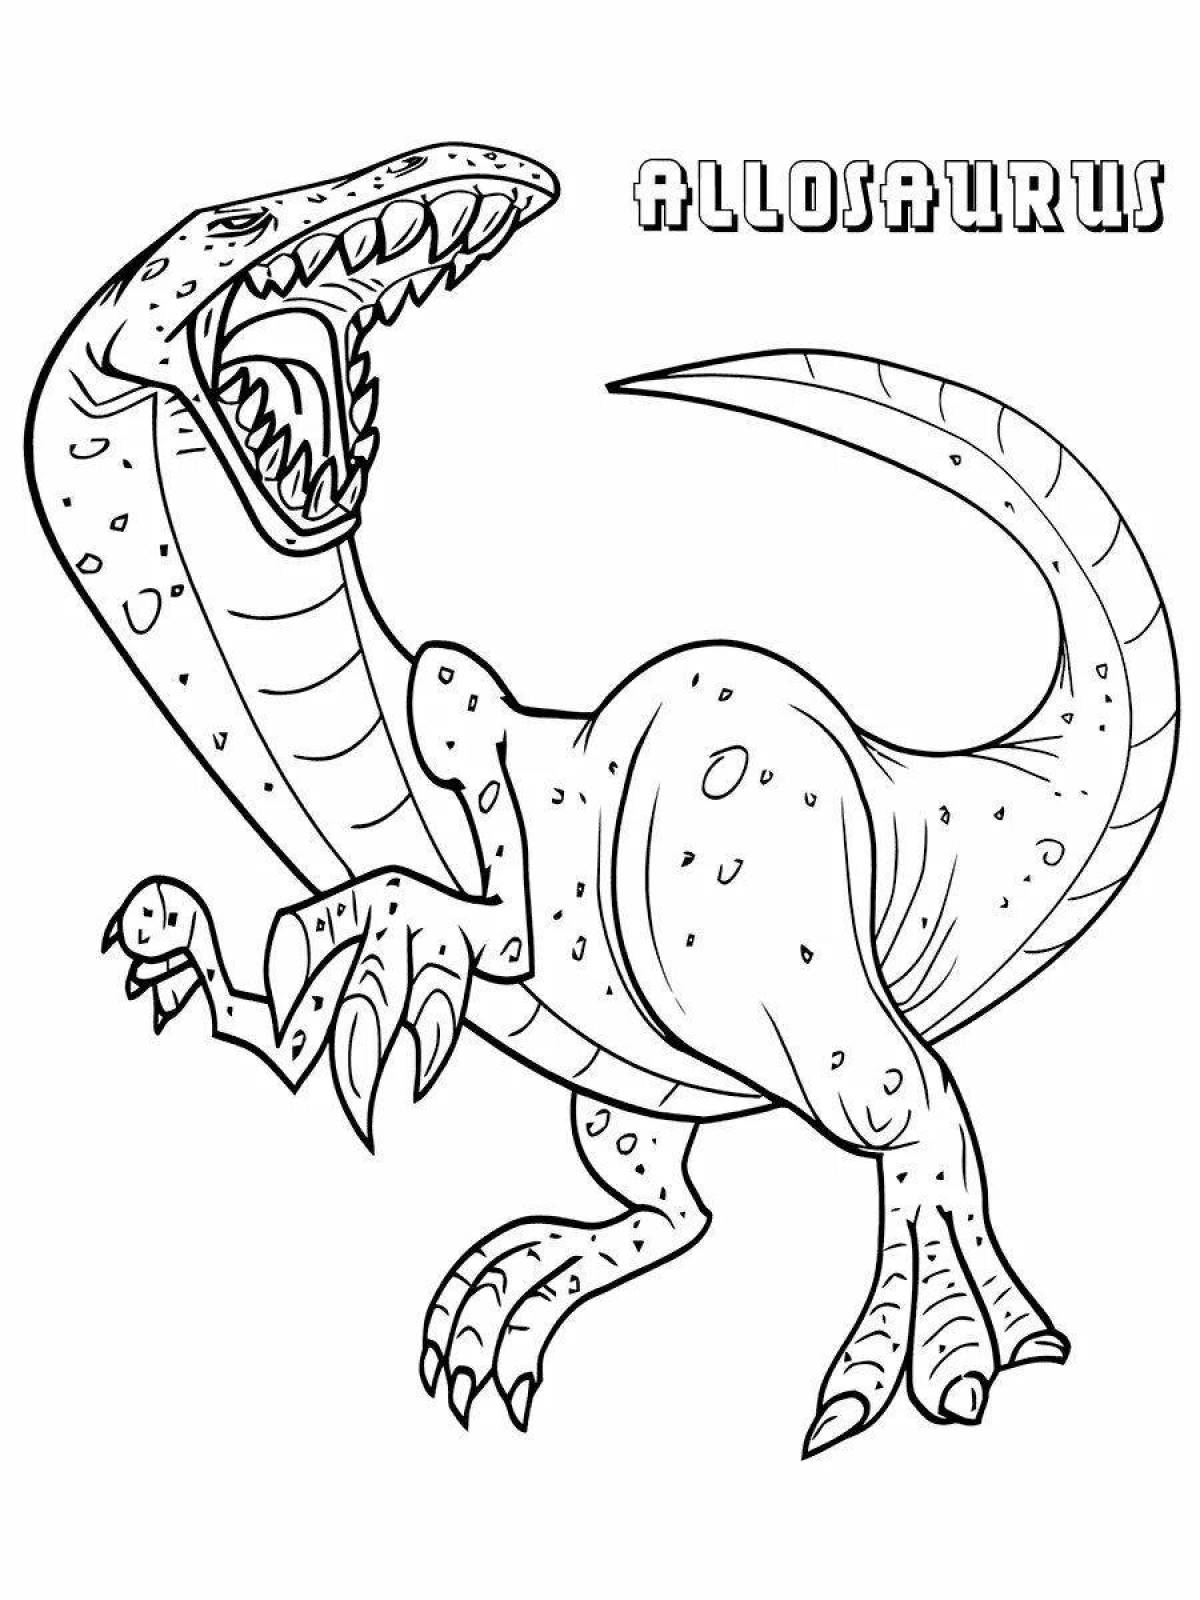 Яркая страница раскраски динозавров аллозавров